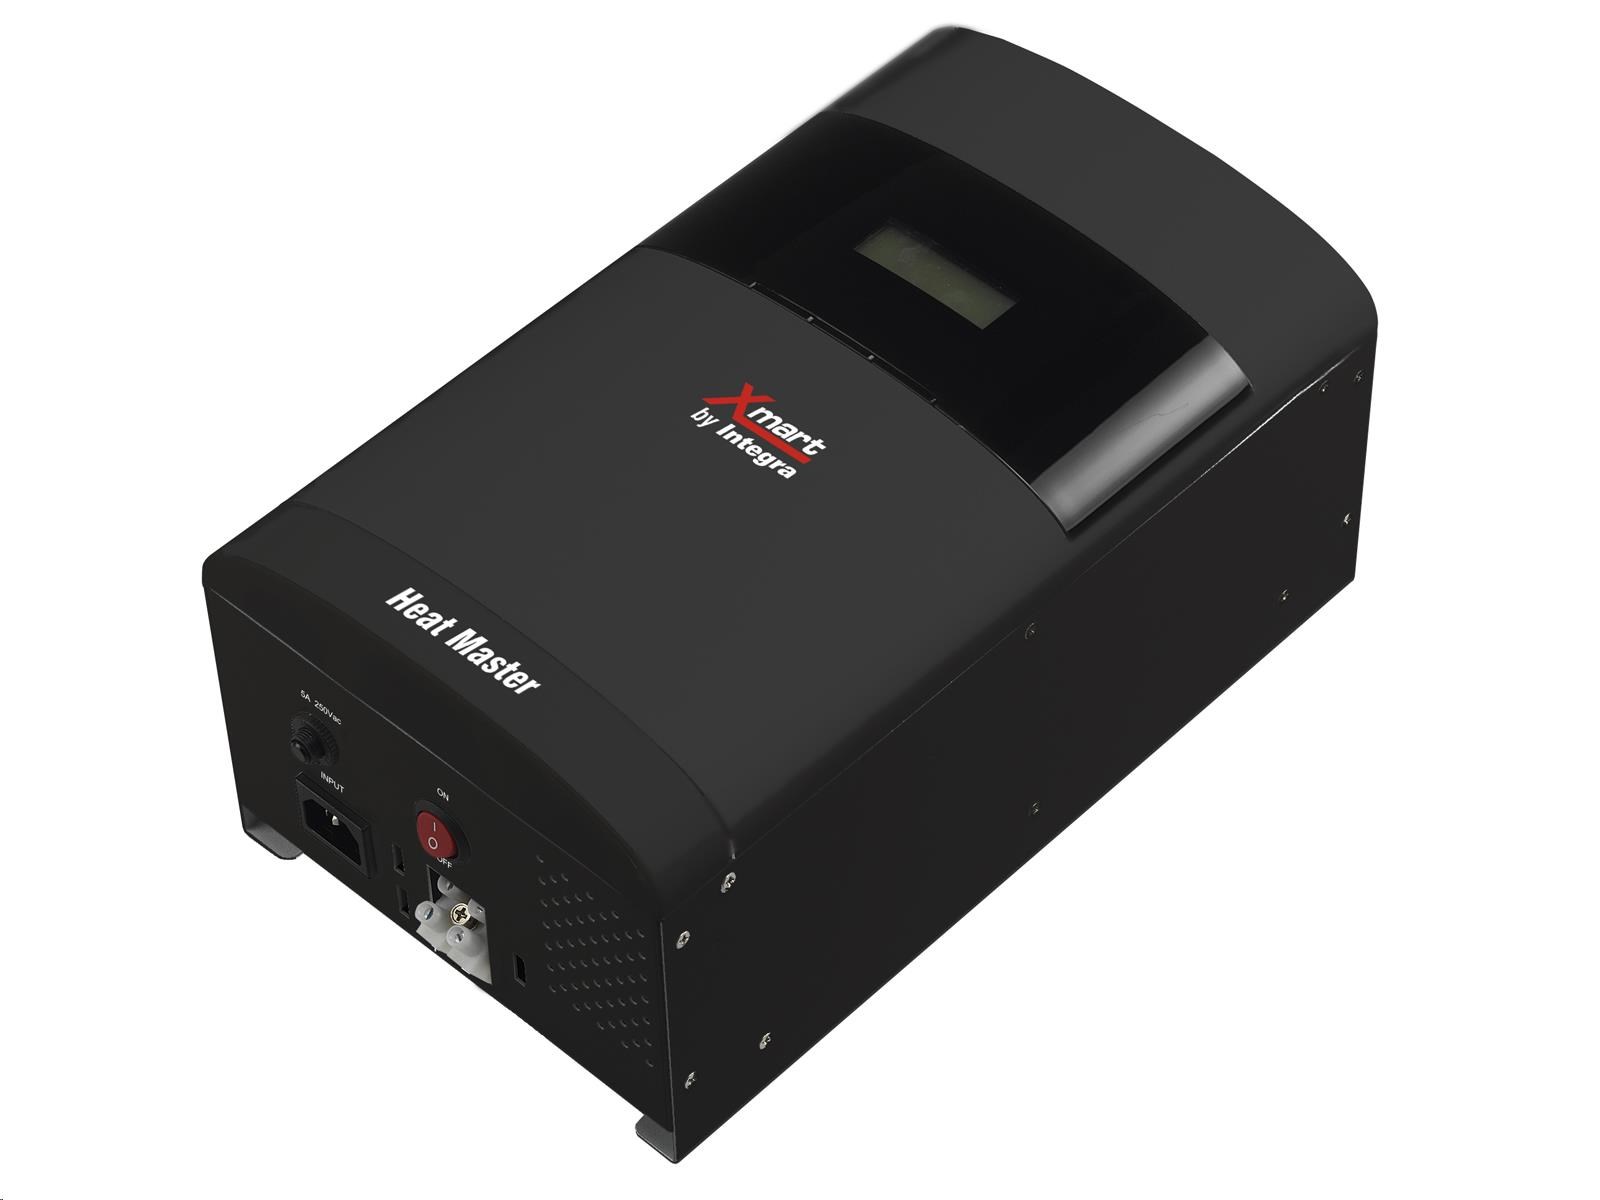 Záložný zdroj Integra Tech Heat Master 200 pre vykurovacie systémy (čierny)1 